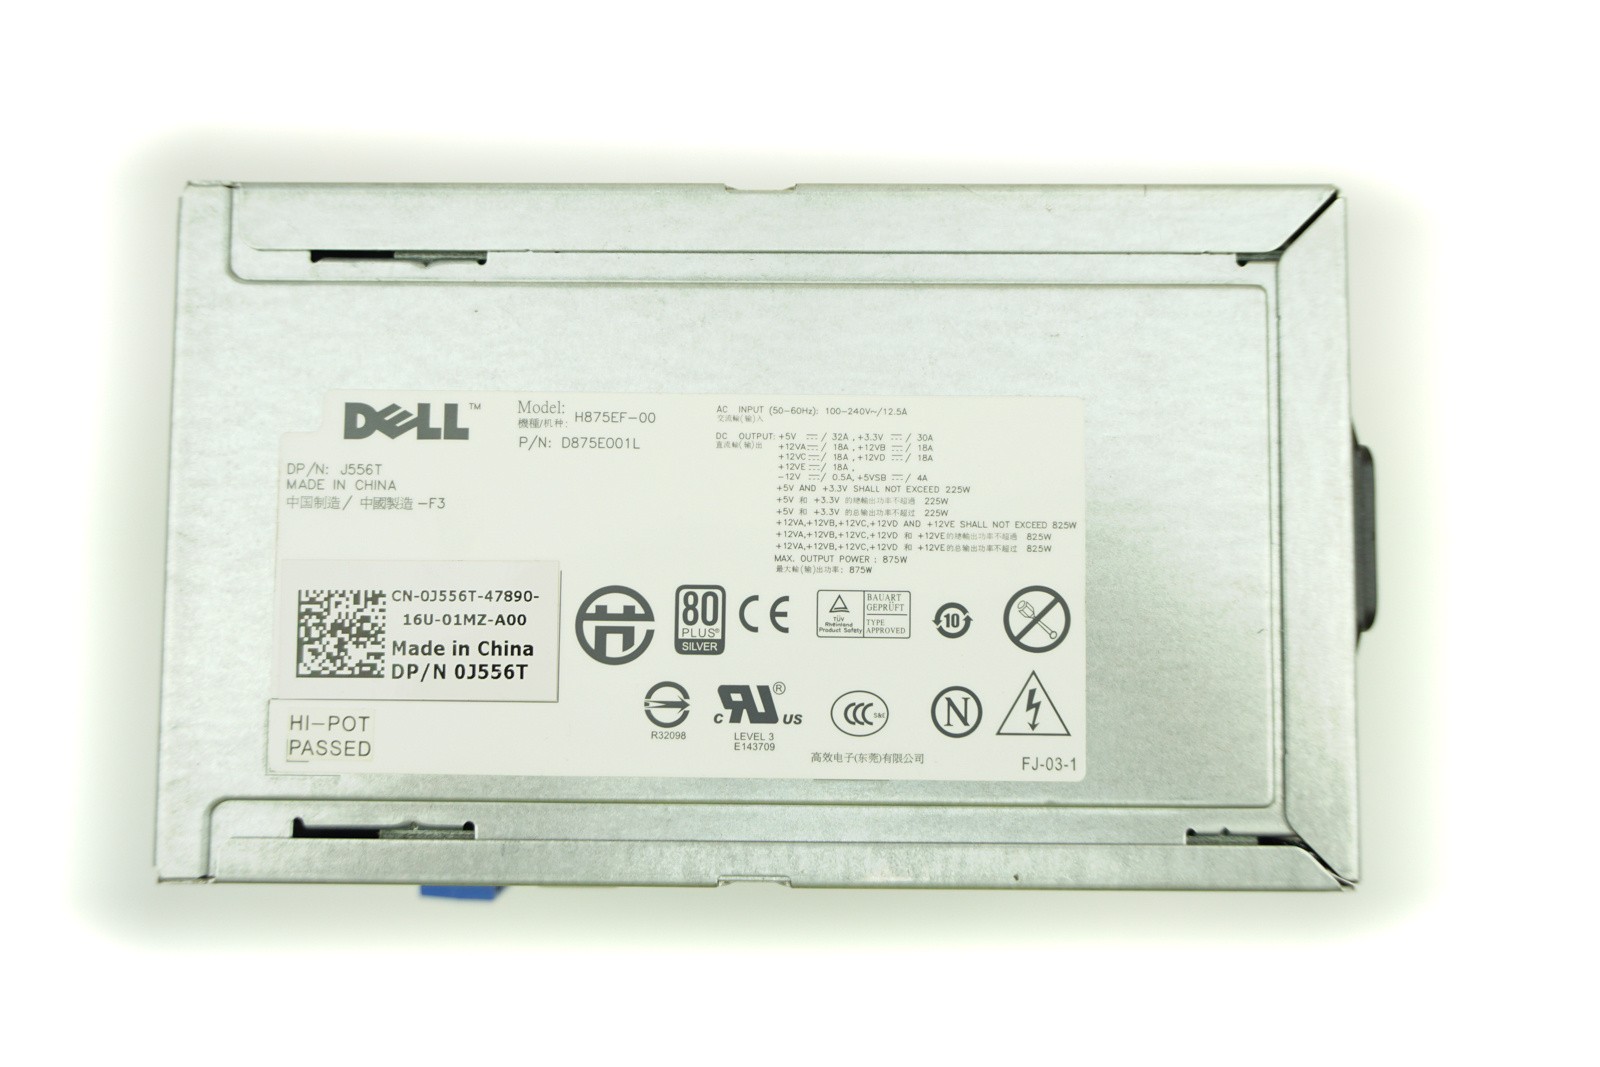 Dell T5500 PSU 875W